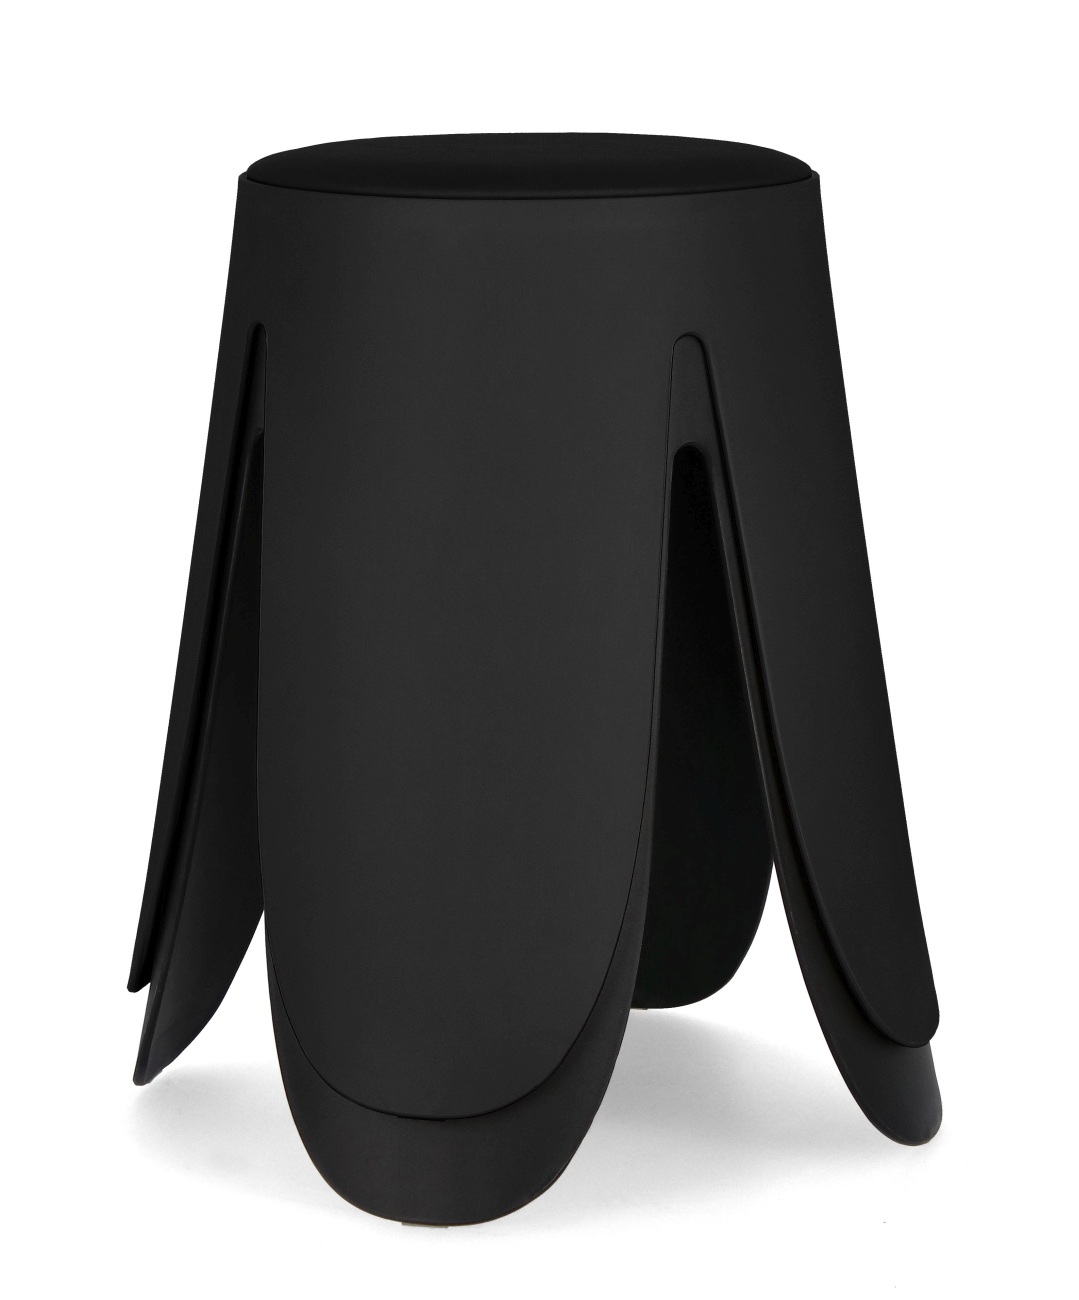 Der Hocker Imogen überzeugt mit seinem modernen Stil. Gefertigt wurde er aus Kunststoff, welcher einen schwarzen Farbton besitzt. Die Sitzfläche ist aus Kunstleder und hat eine schwarze Farbe. Der Hocker besitzt einen Durchmesser von 37 cm.